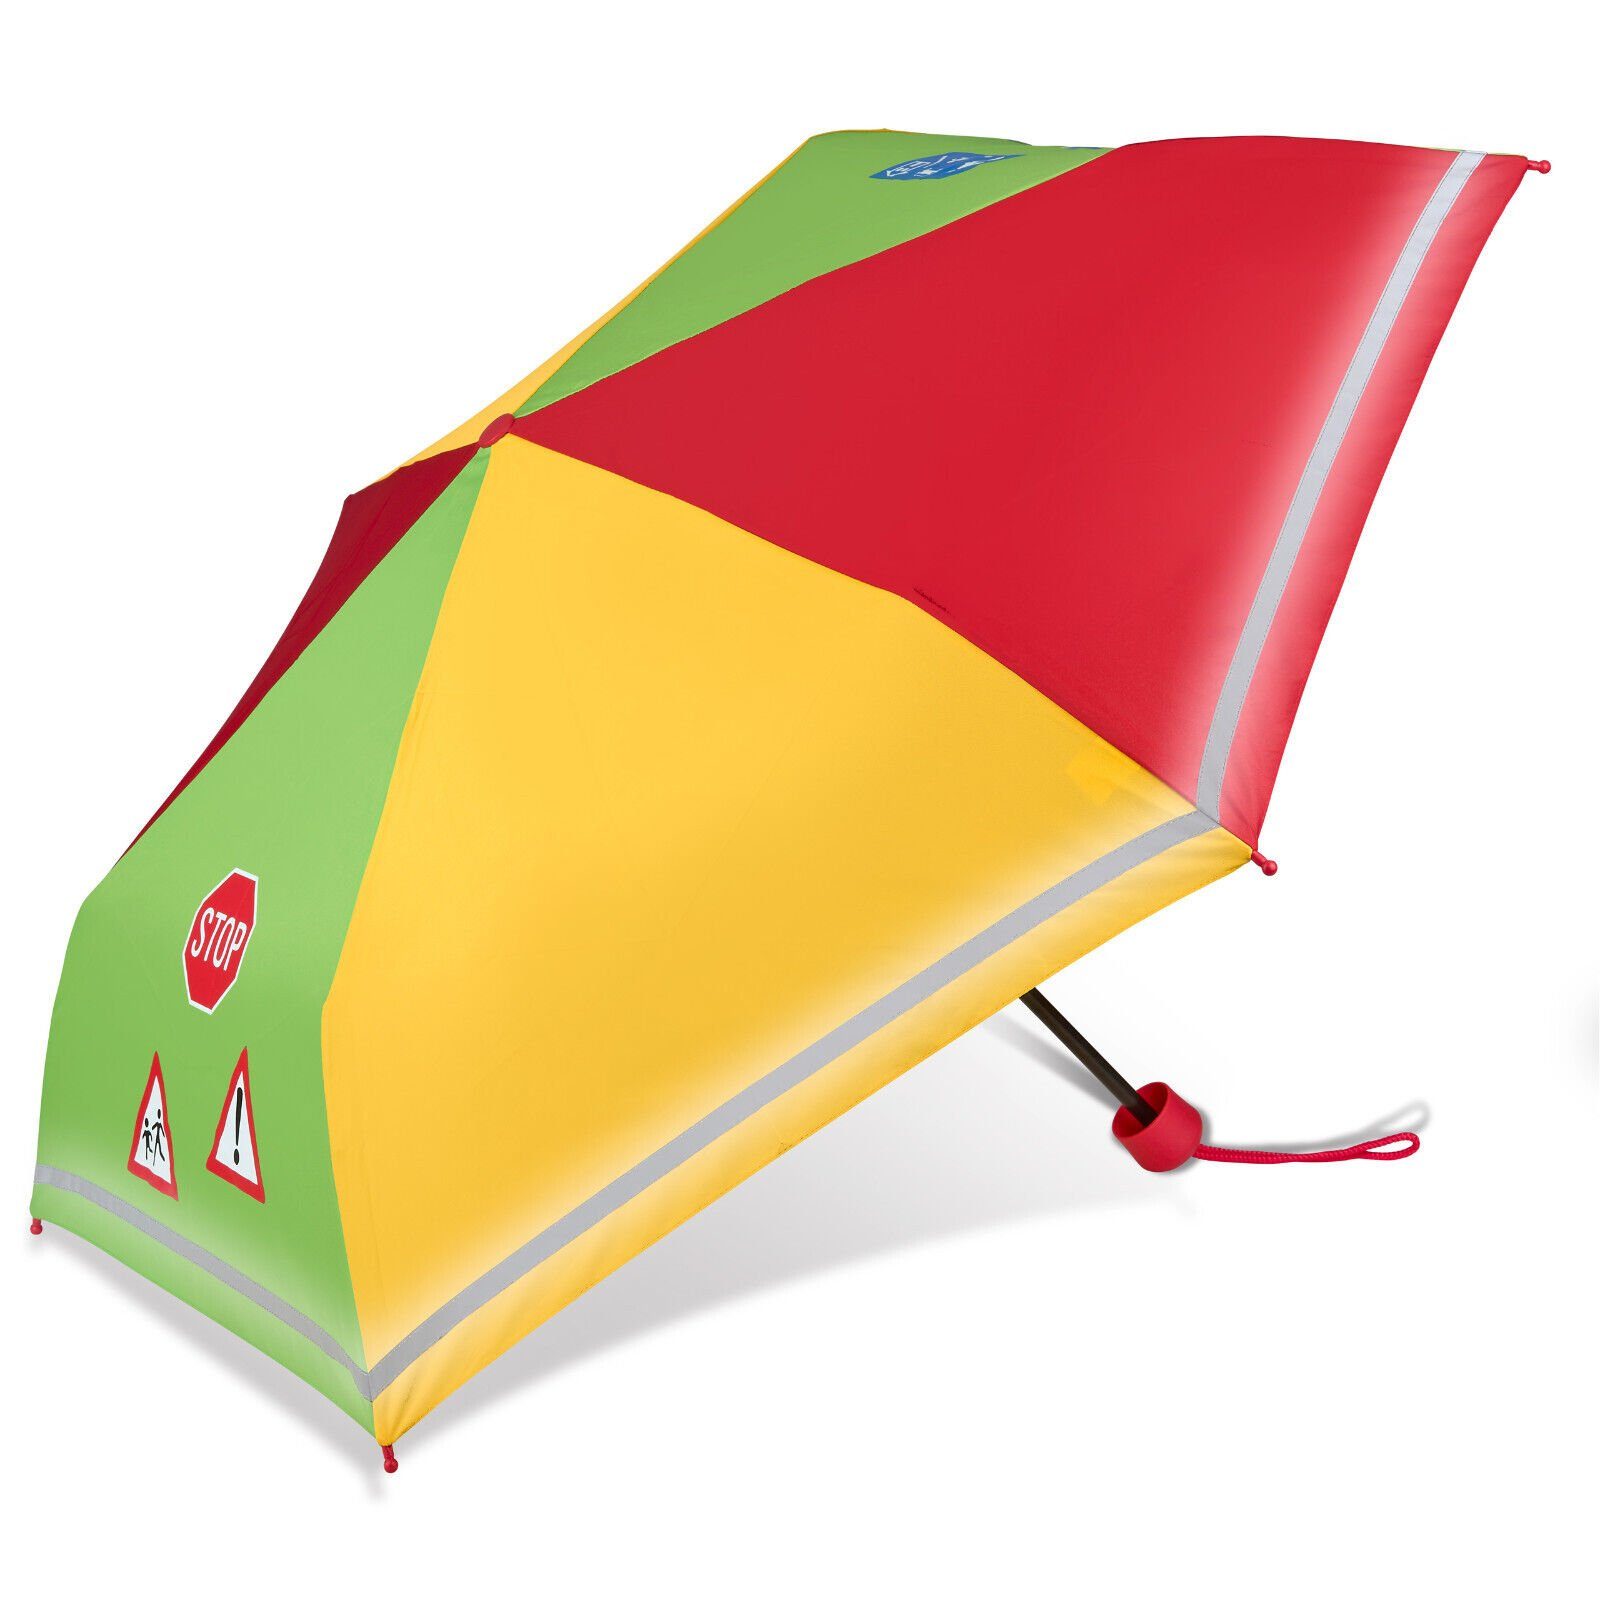 Dr. Neuser Taschenregenschirm, speziell für leicht, stabil kompakt, reflektierend, Kinder